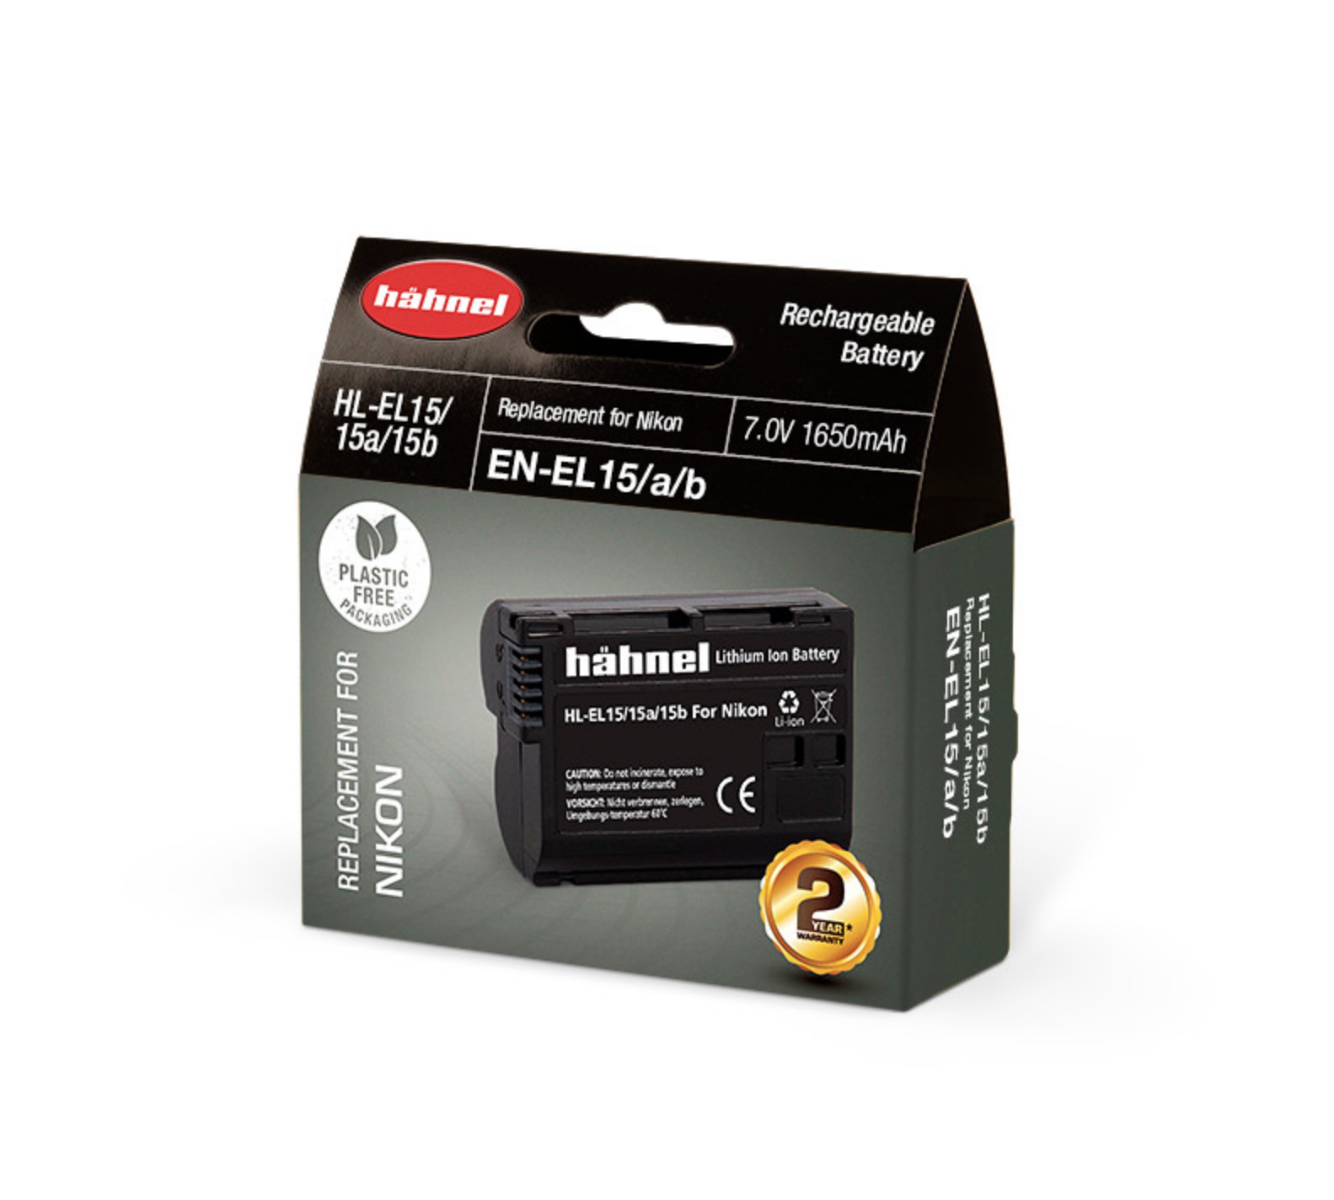 Hahnel HL-EL15 Nikon Type Li-ion Battery Replacement for D7000 / D800 / D800E - EN-EL15